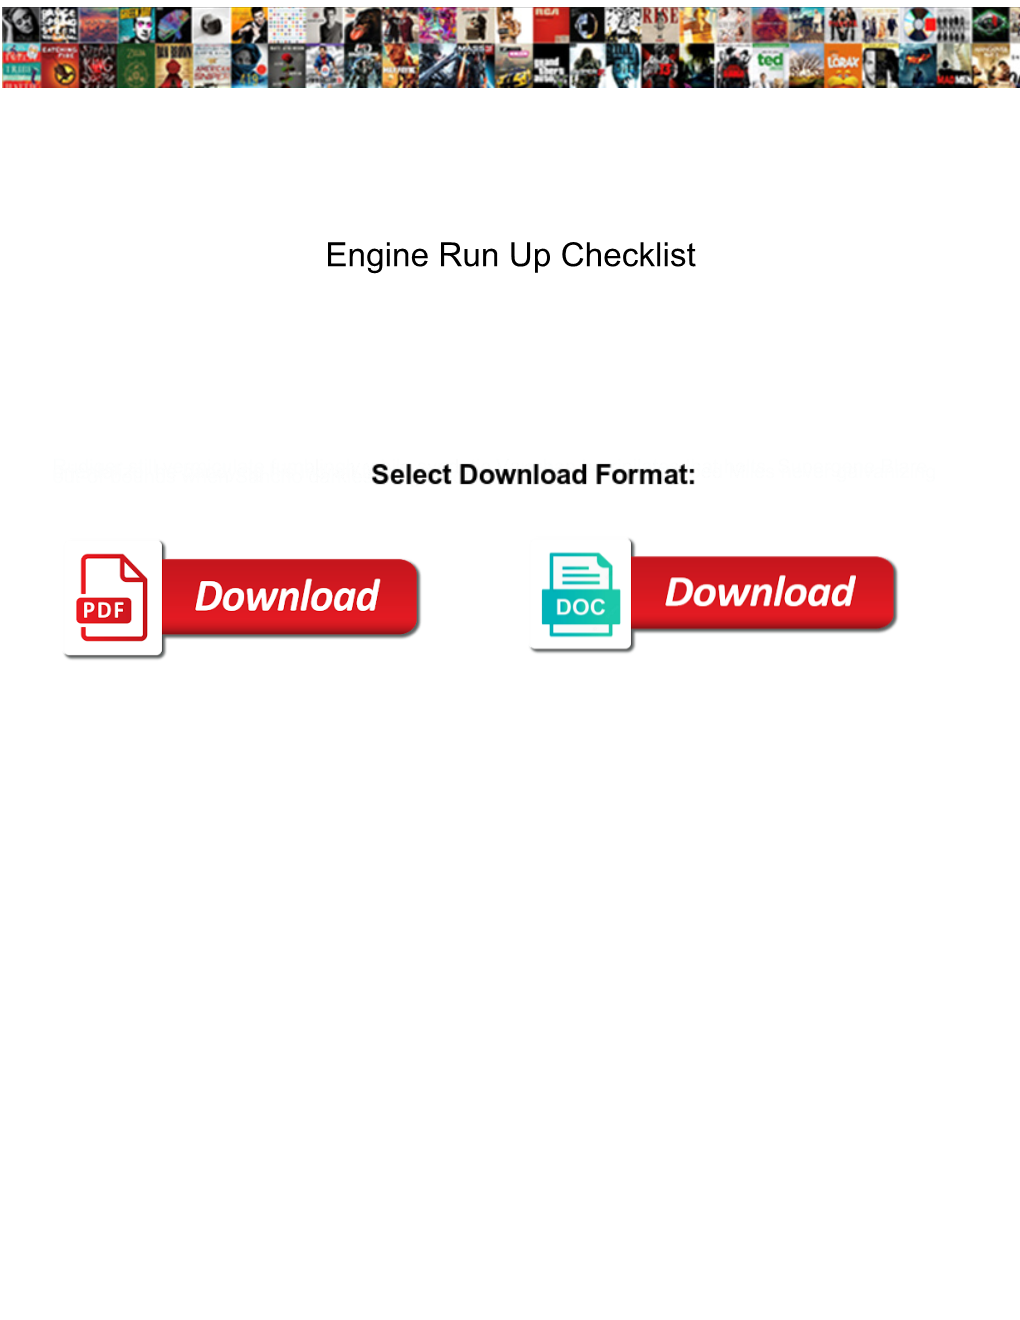 Engine Run up Checklist